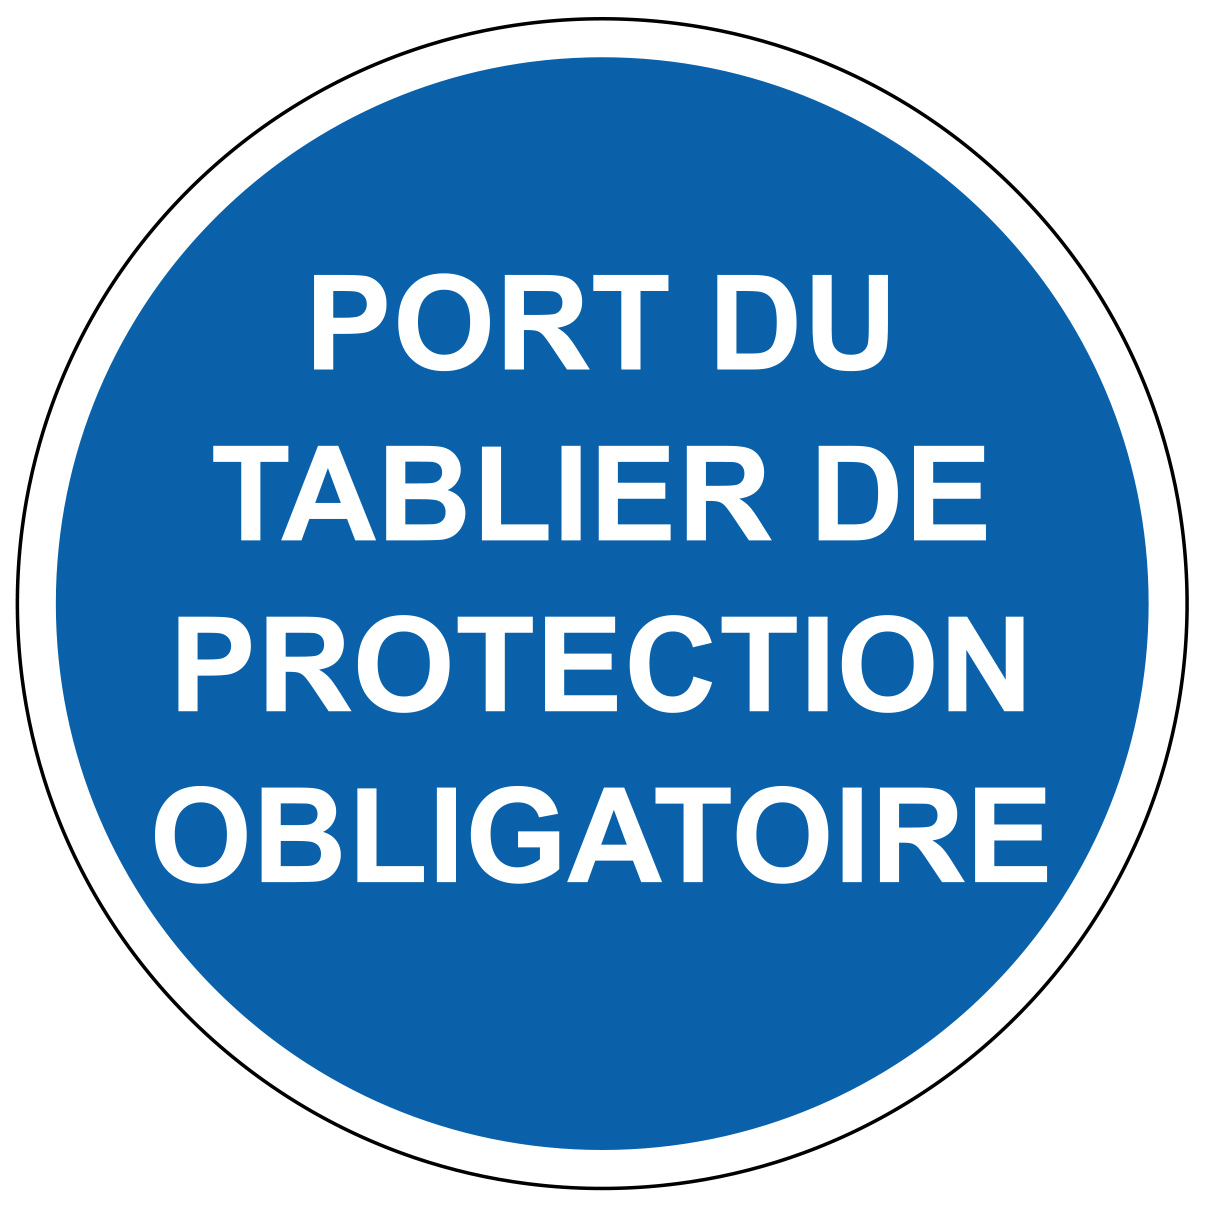 Port du tablier de protection obligatoire